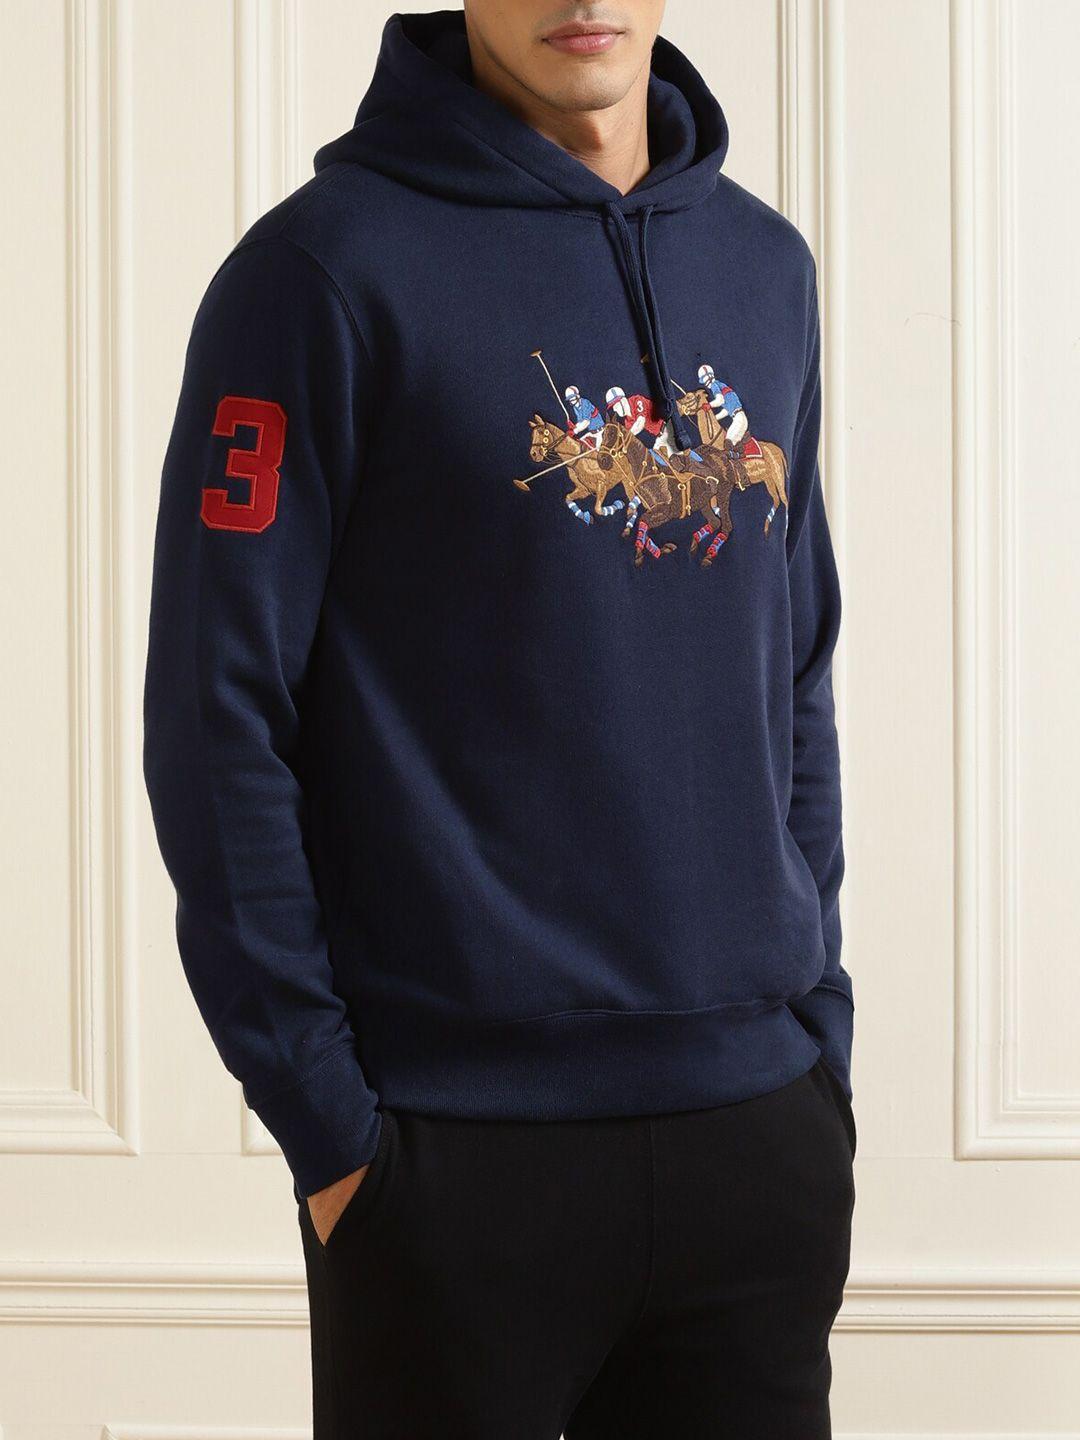 polo-ralph-lauren-men-navy-blue-printed-hooded-sweatshirt